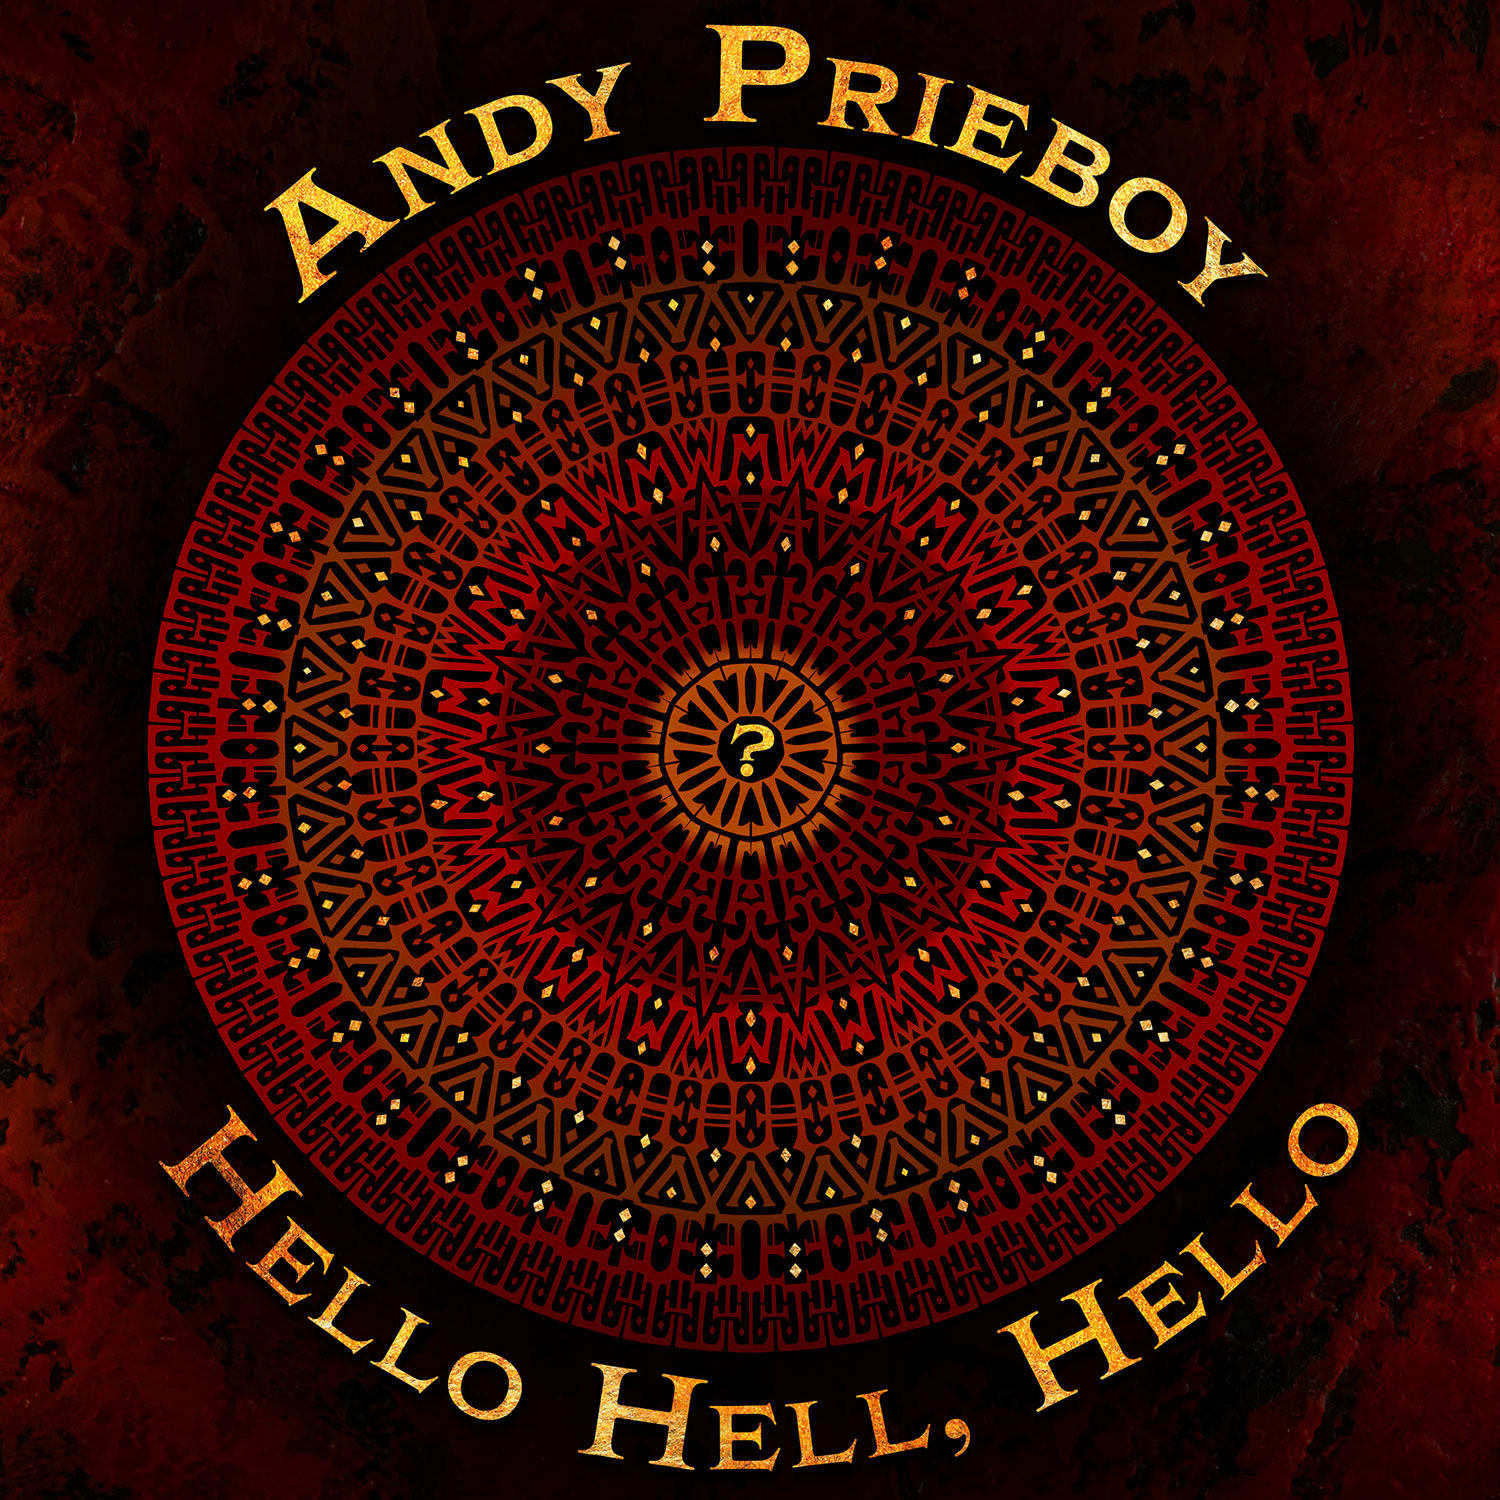 (c) Andyprieboy.com